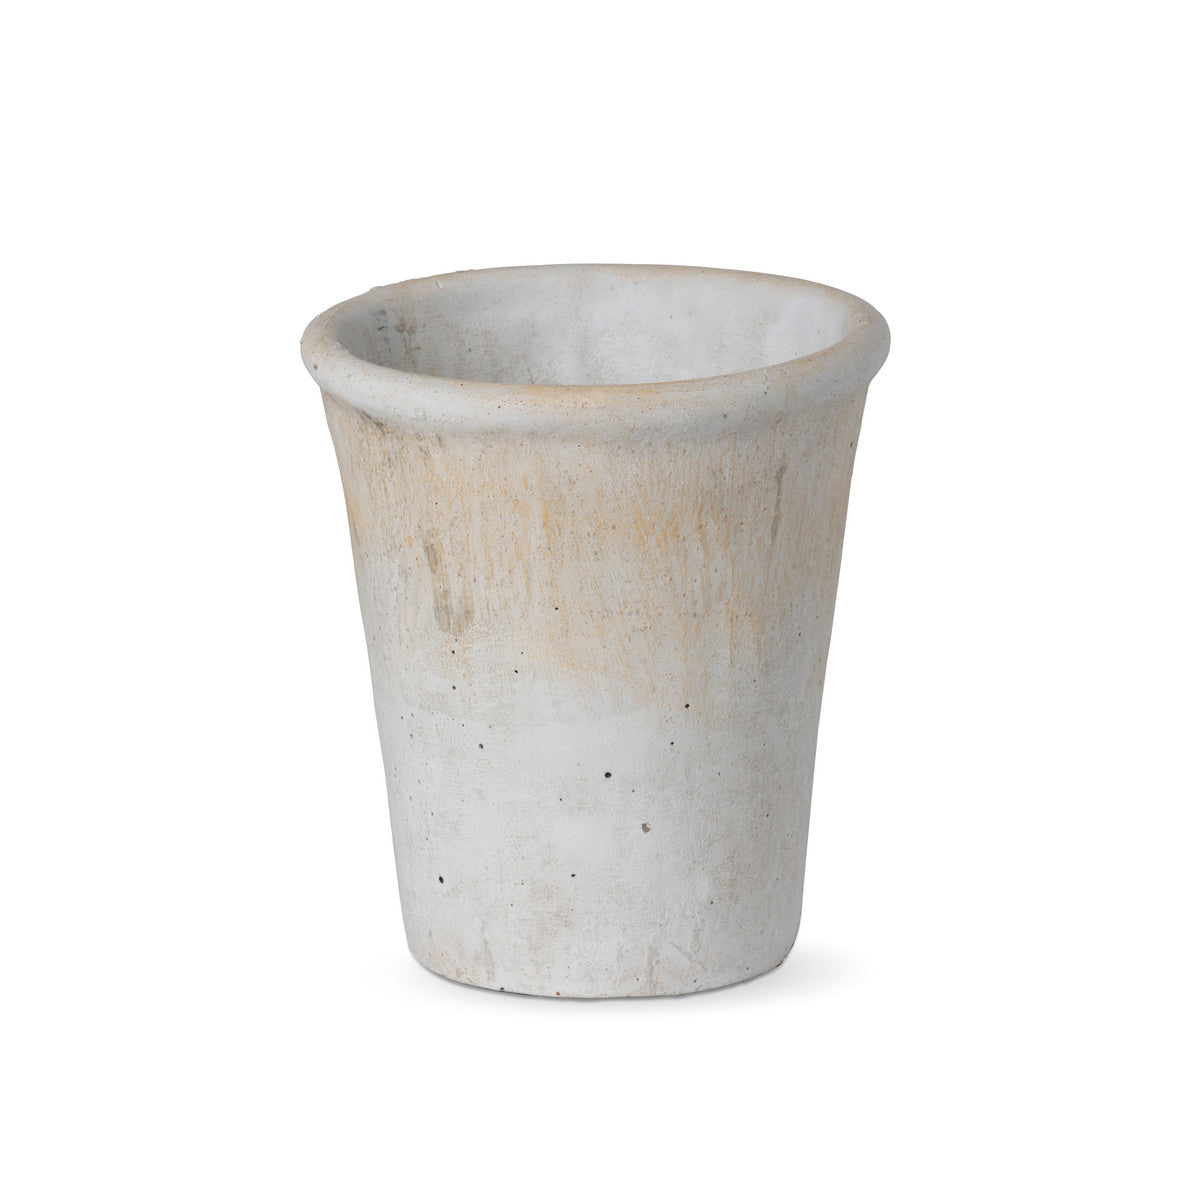 Distressed Concrete Medium Pot